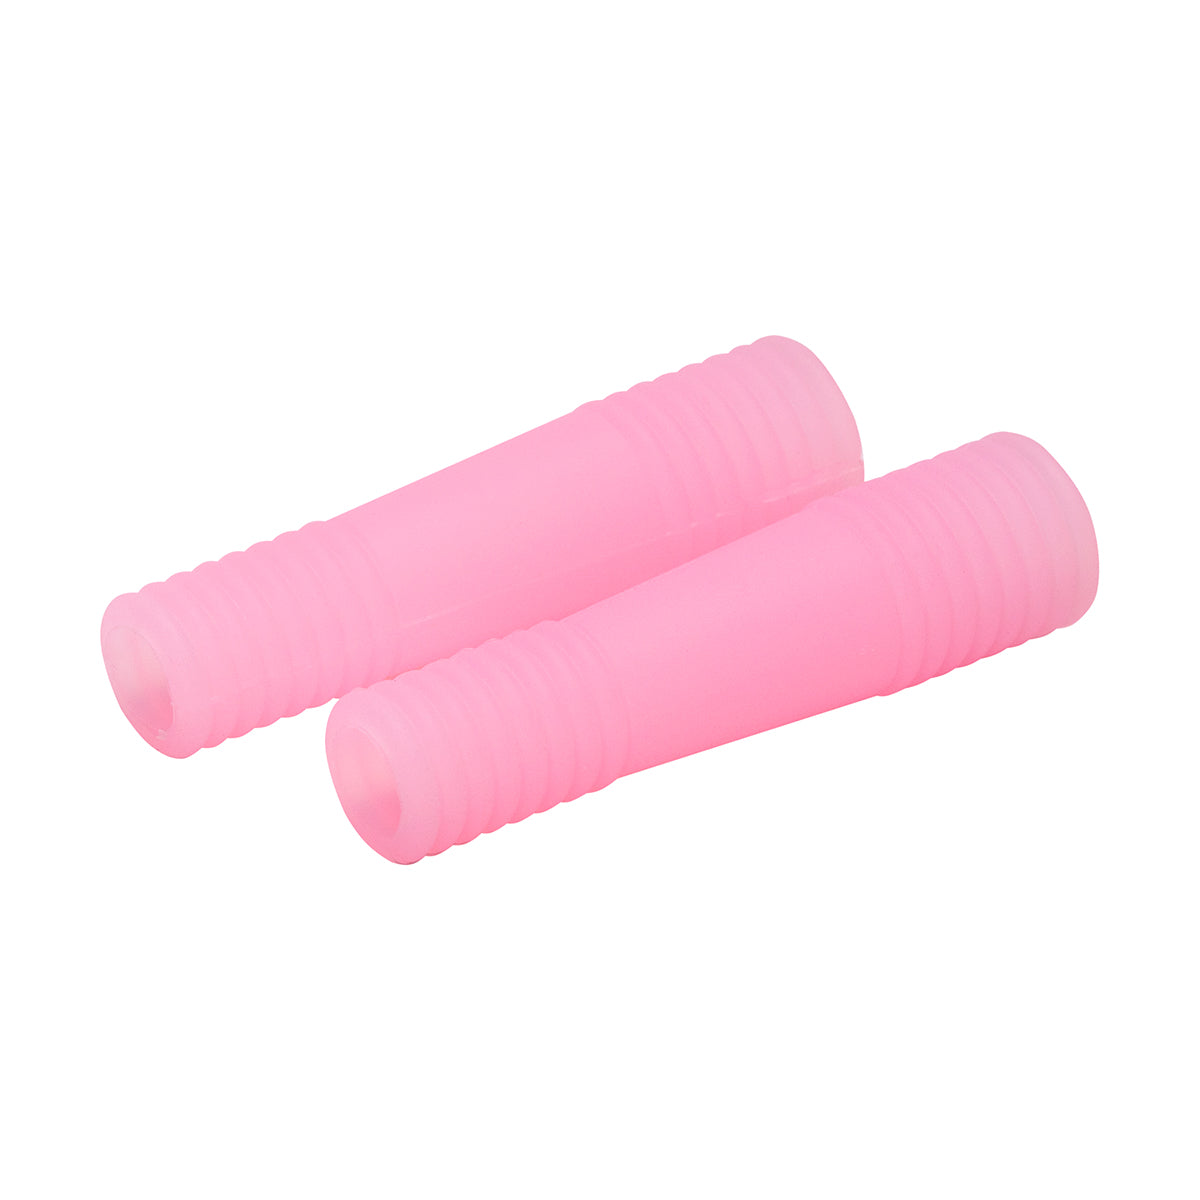 Pince à cuticules avec couverture en silicone rose